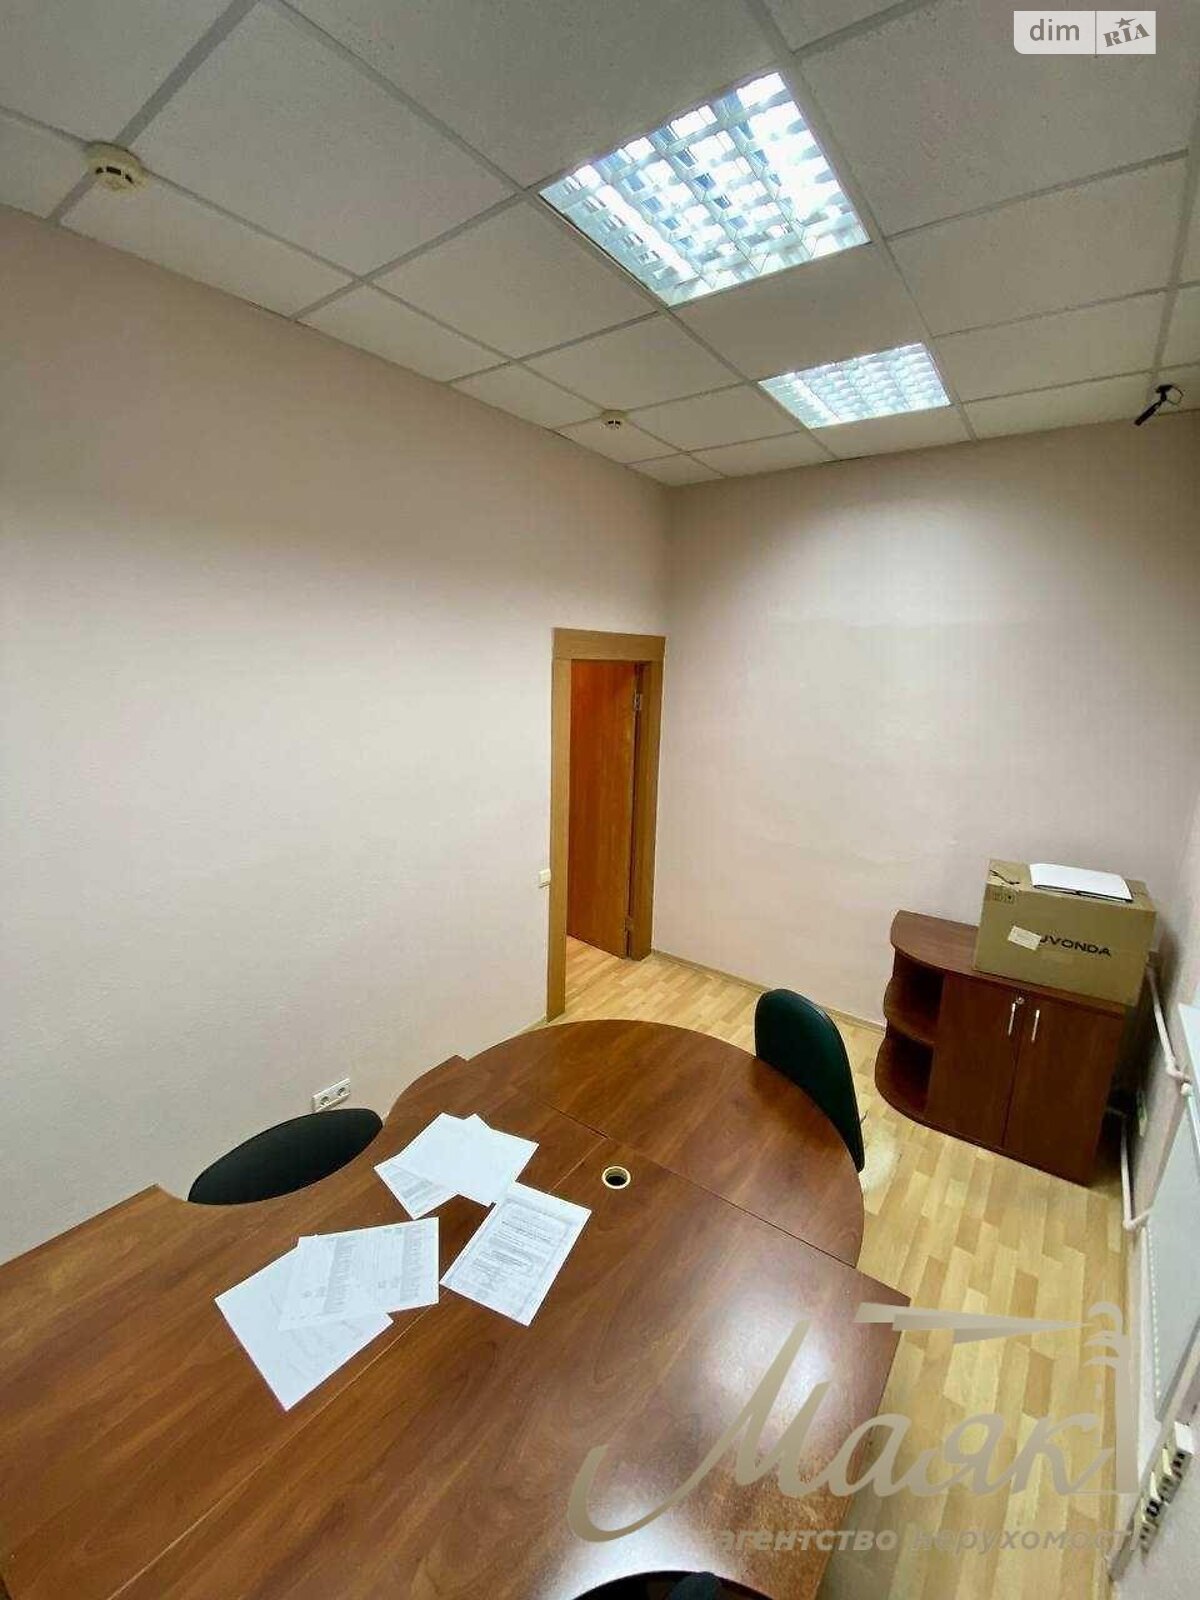 Аренда офисного помещения в Киеве, Павла Пестеля улица, помещений - 4, этаж - 3 фото 1